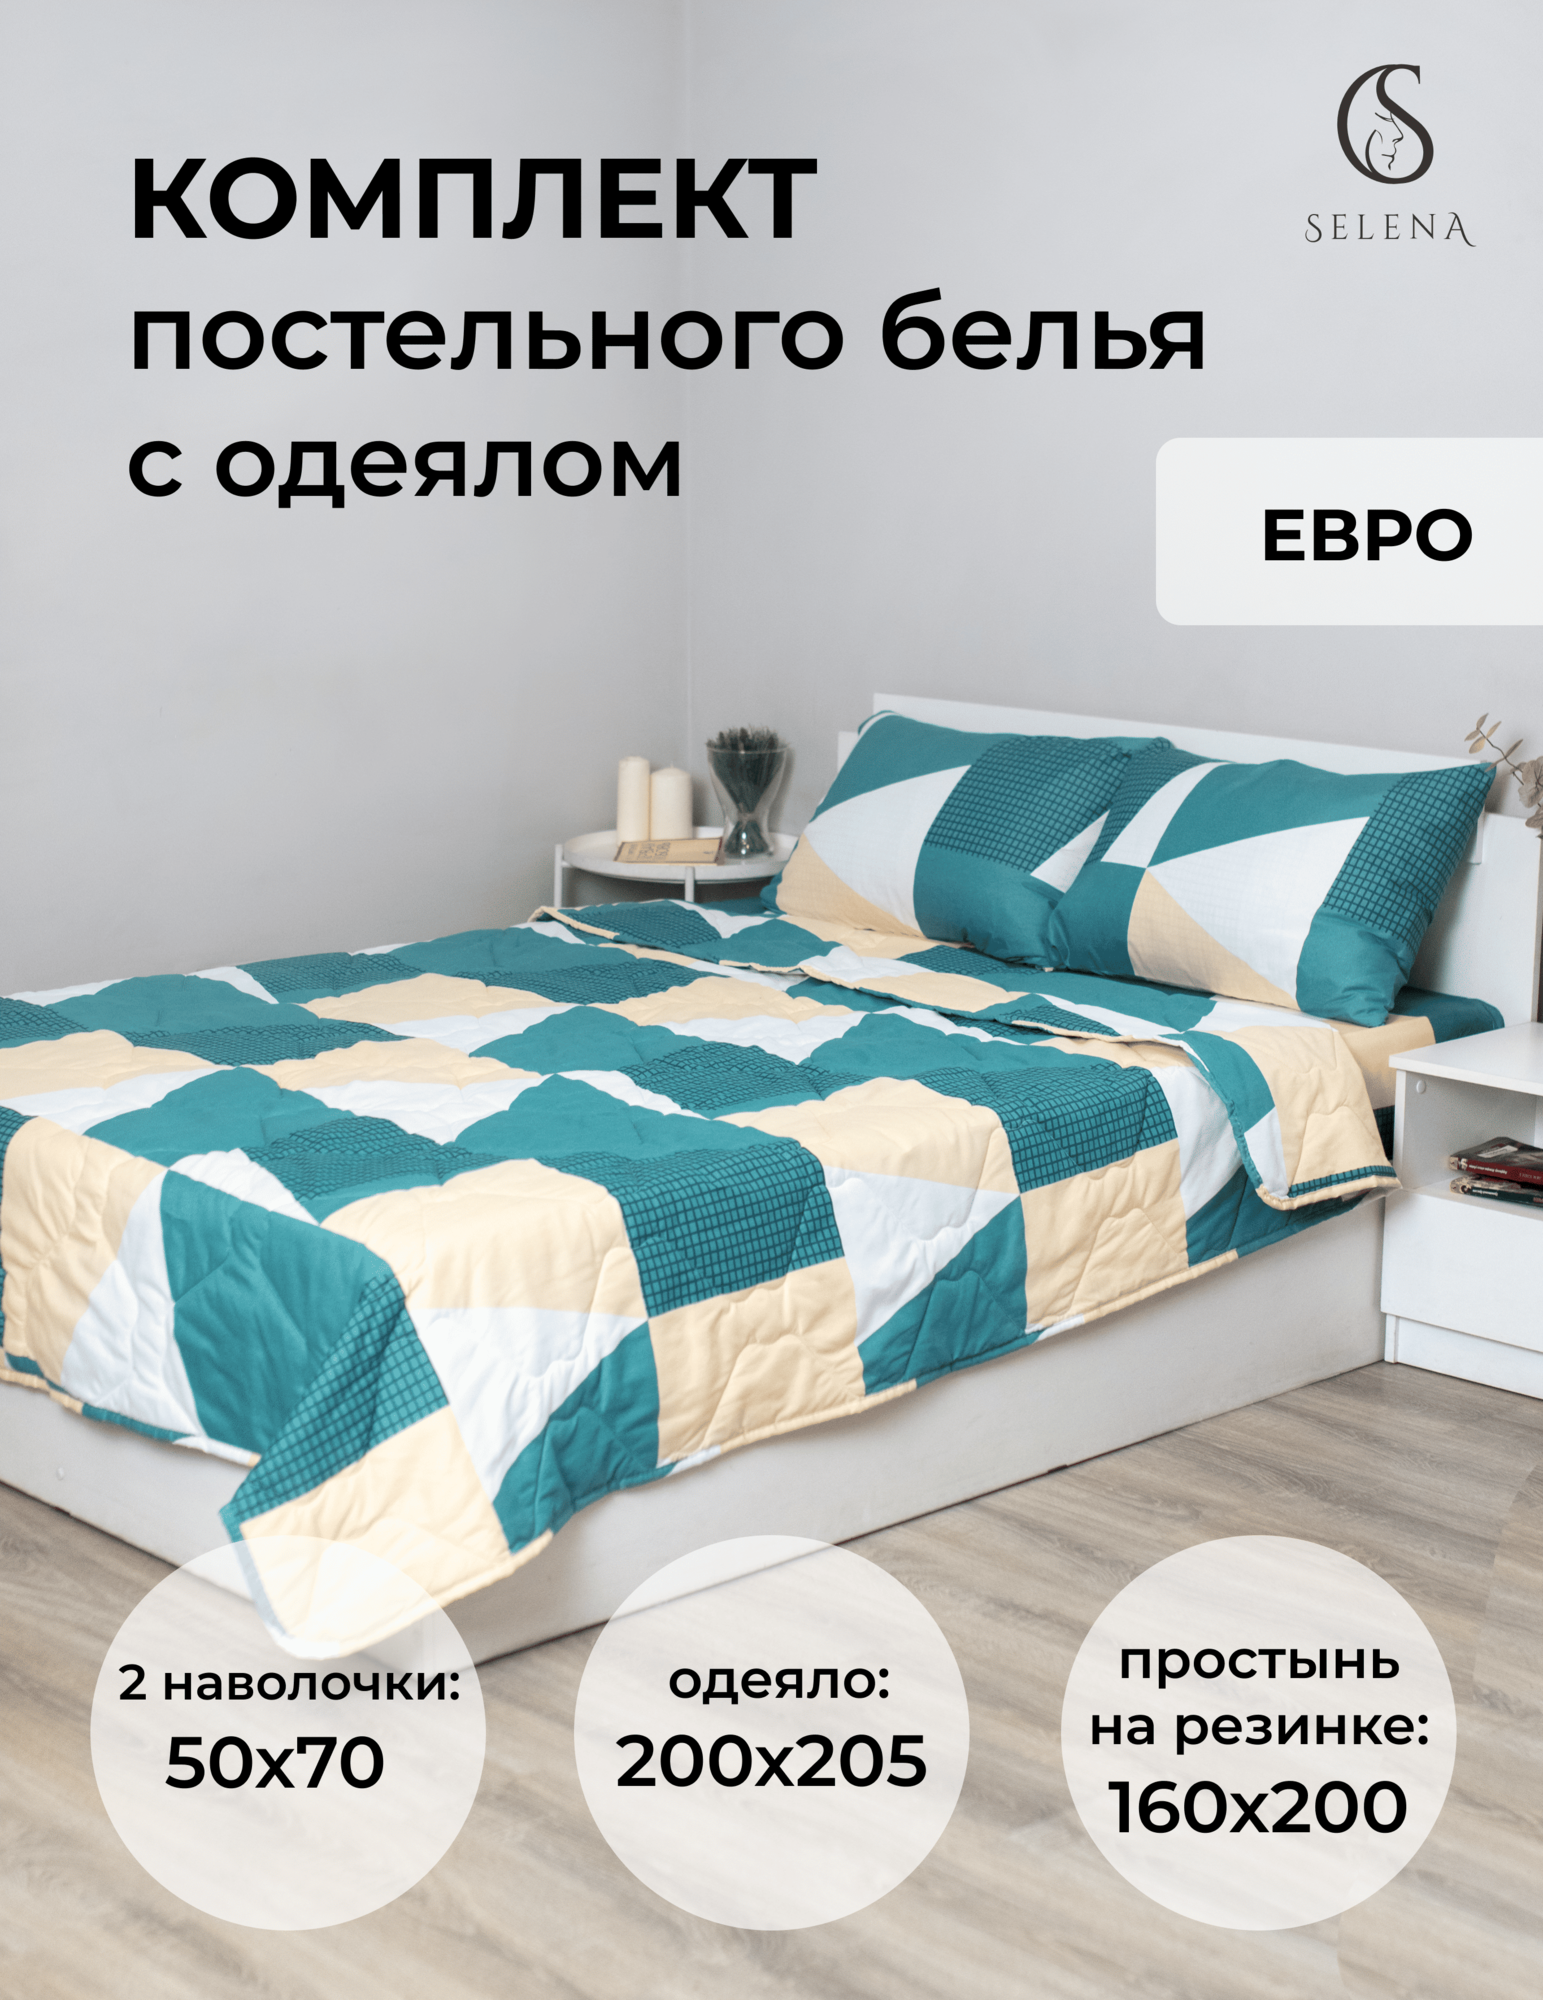 Комплект постельного белья с одеялом SELENA бриофит евро, полисатин , наволочка 2 шт